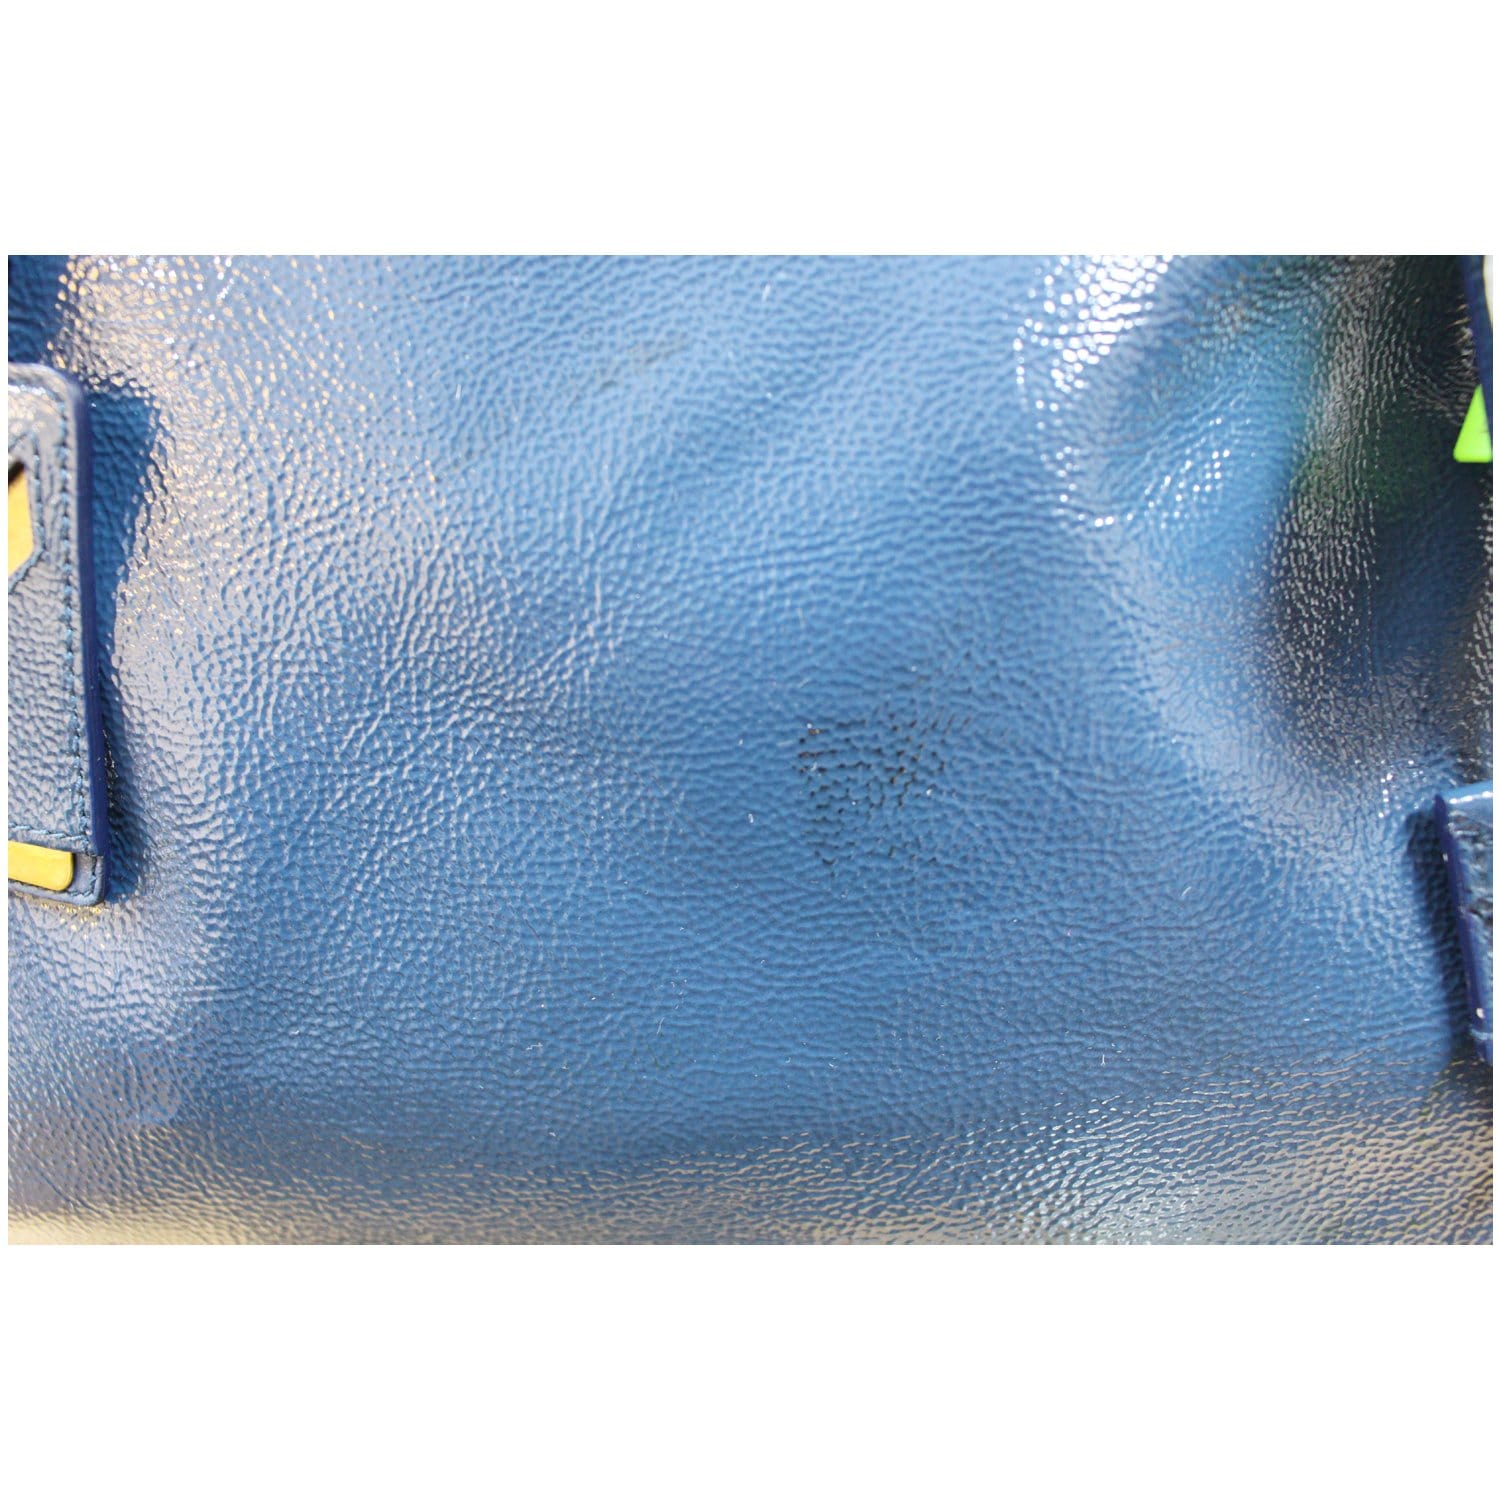 Yves Saint Laurent Black Patent Majorelle Bag Handbag Satchel For